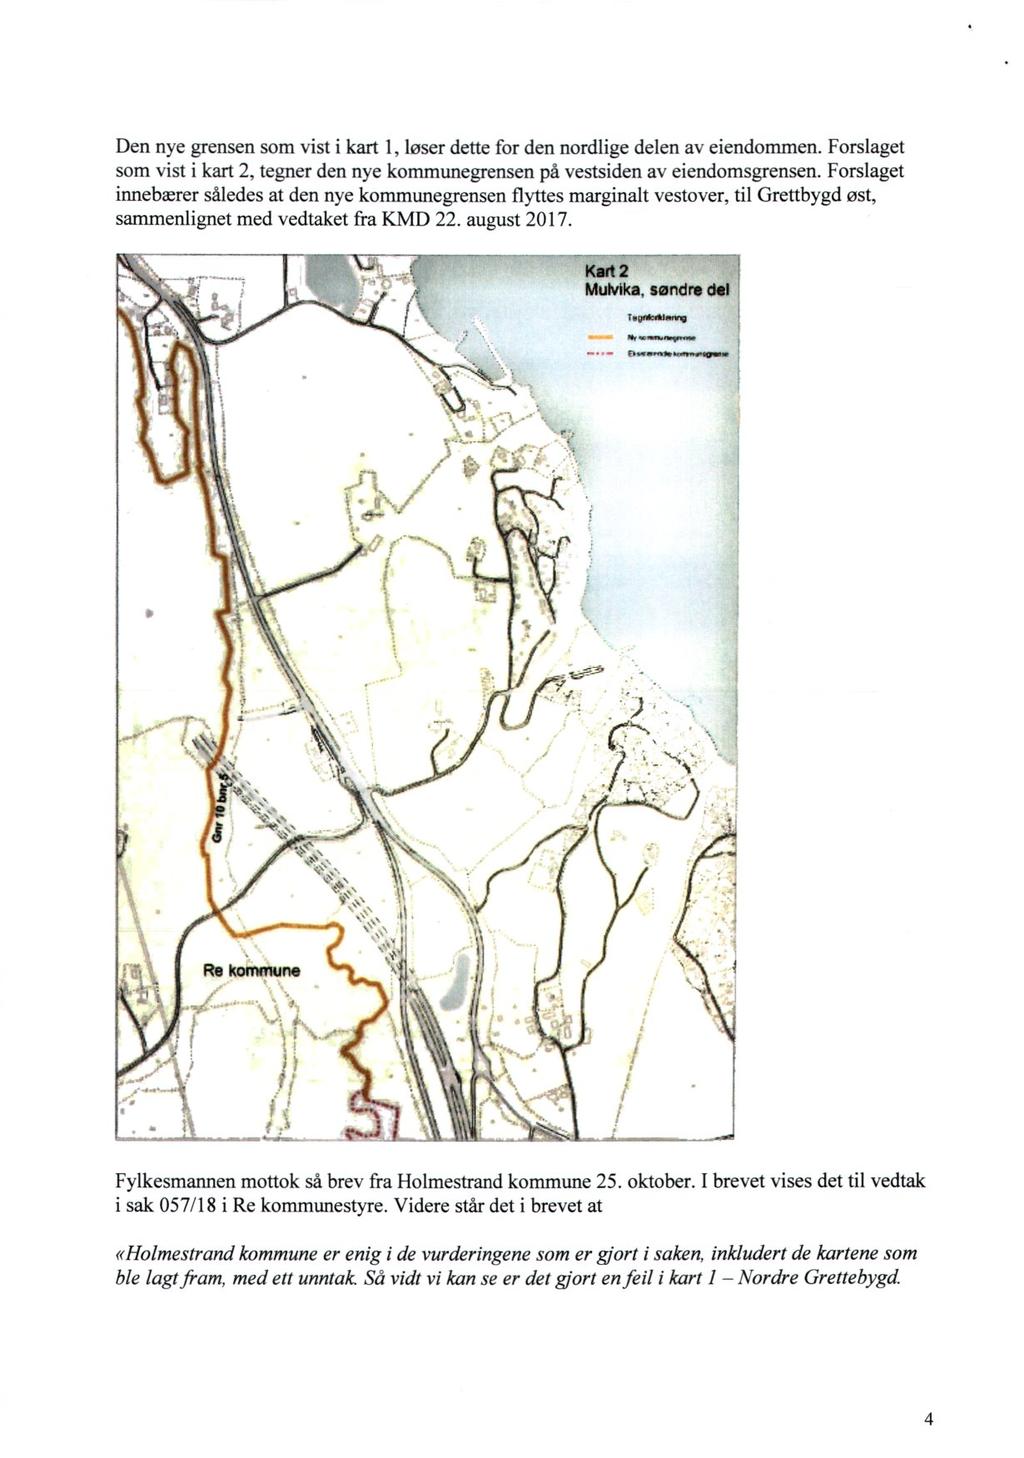 Den nye grensen som vist i kart 1, løser dette for den nordlige delen av eiendommen. Forslaget som vist i kart 2, tegner den nye kommunegrensen på vestsiden av eiendomsgrensen.